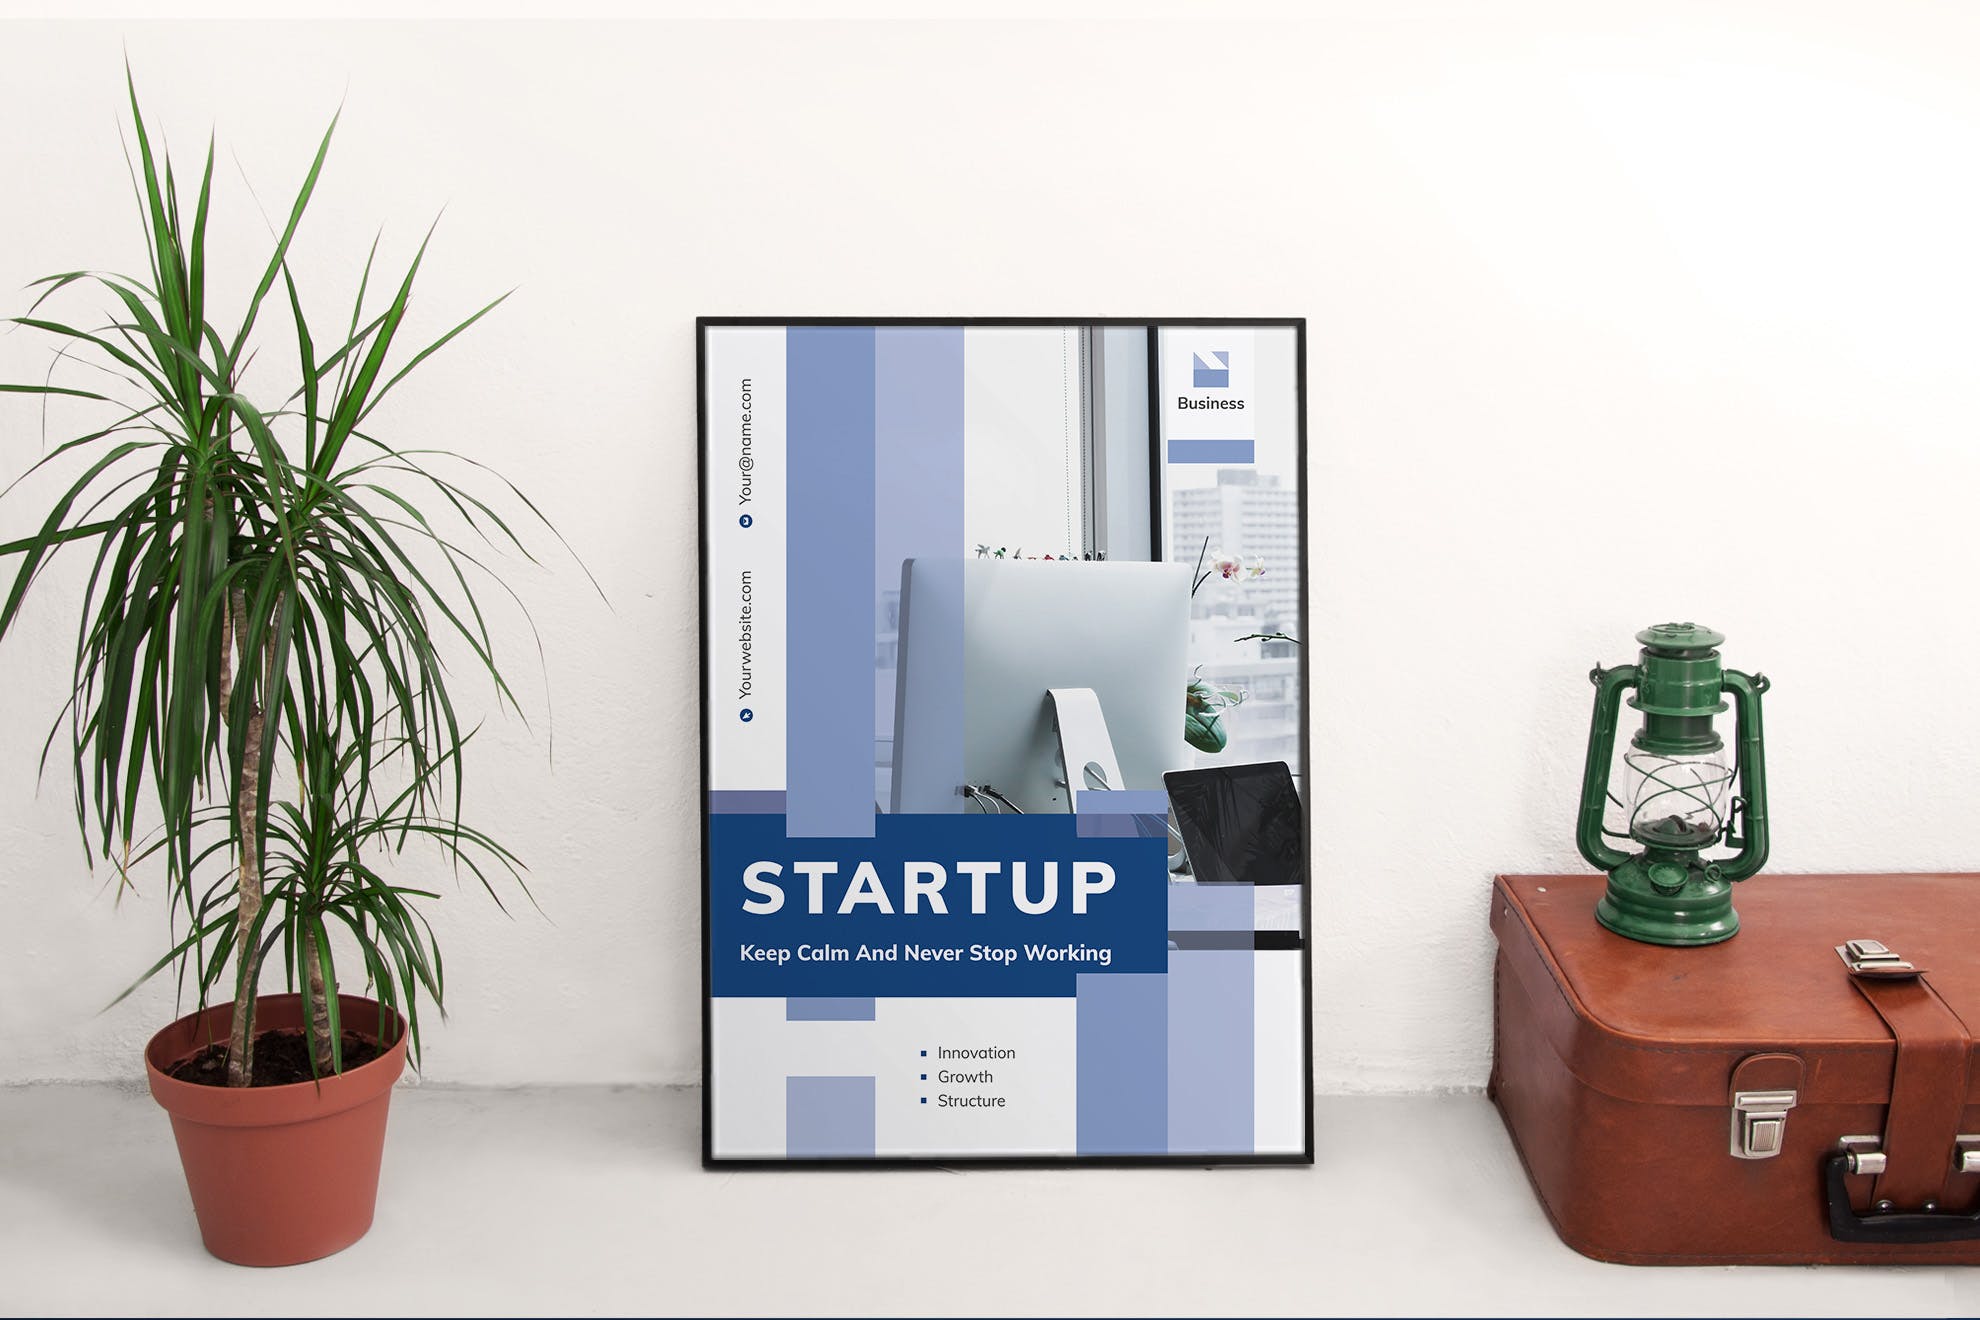 创业互联网项目简介宣传海报PSD素材第一素材精选模板 Startup Poster插图(2)